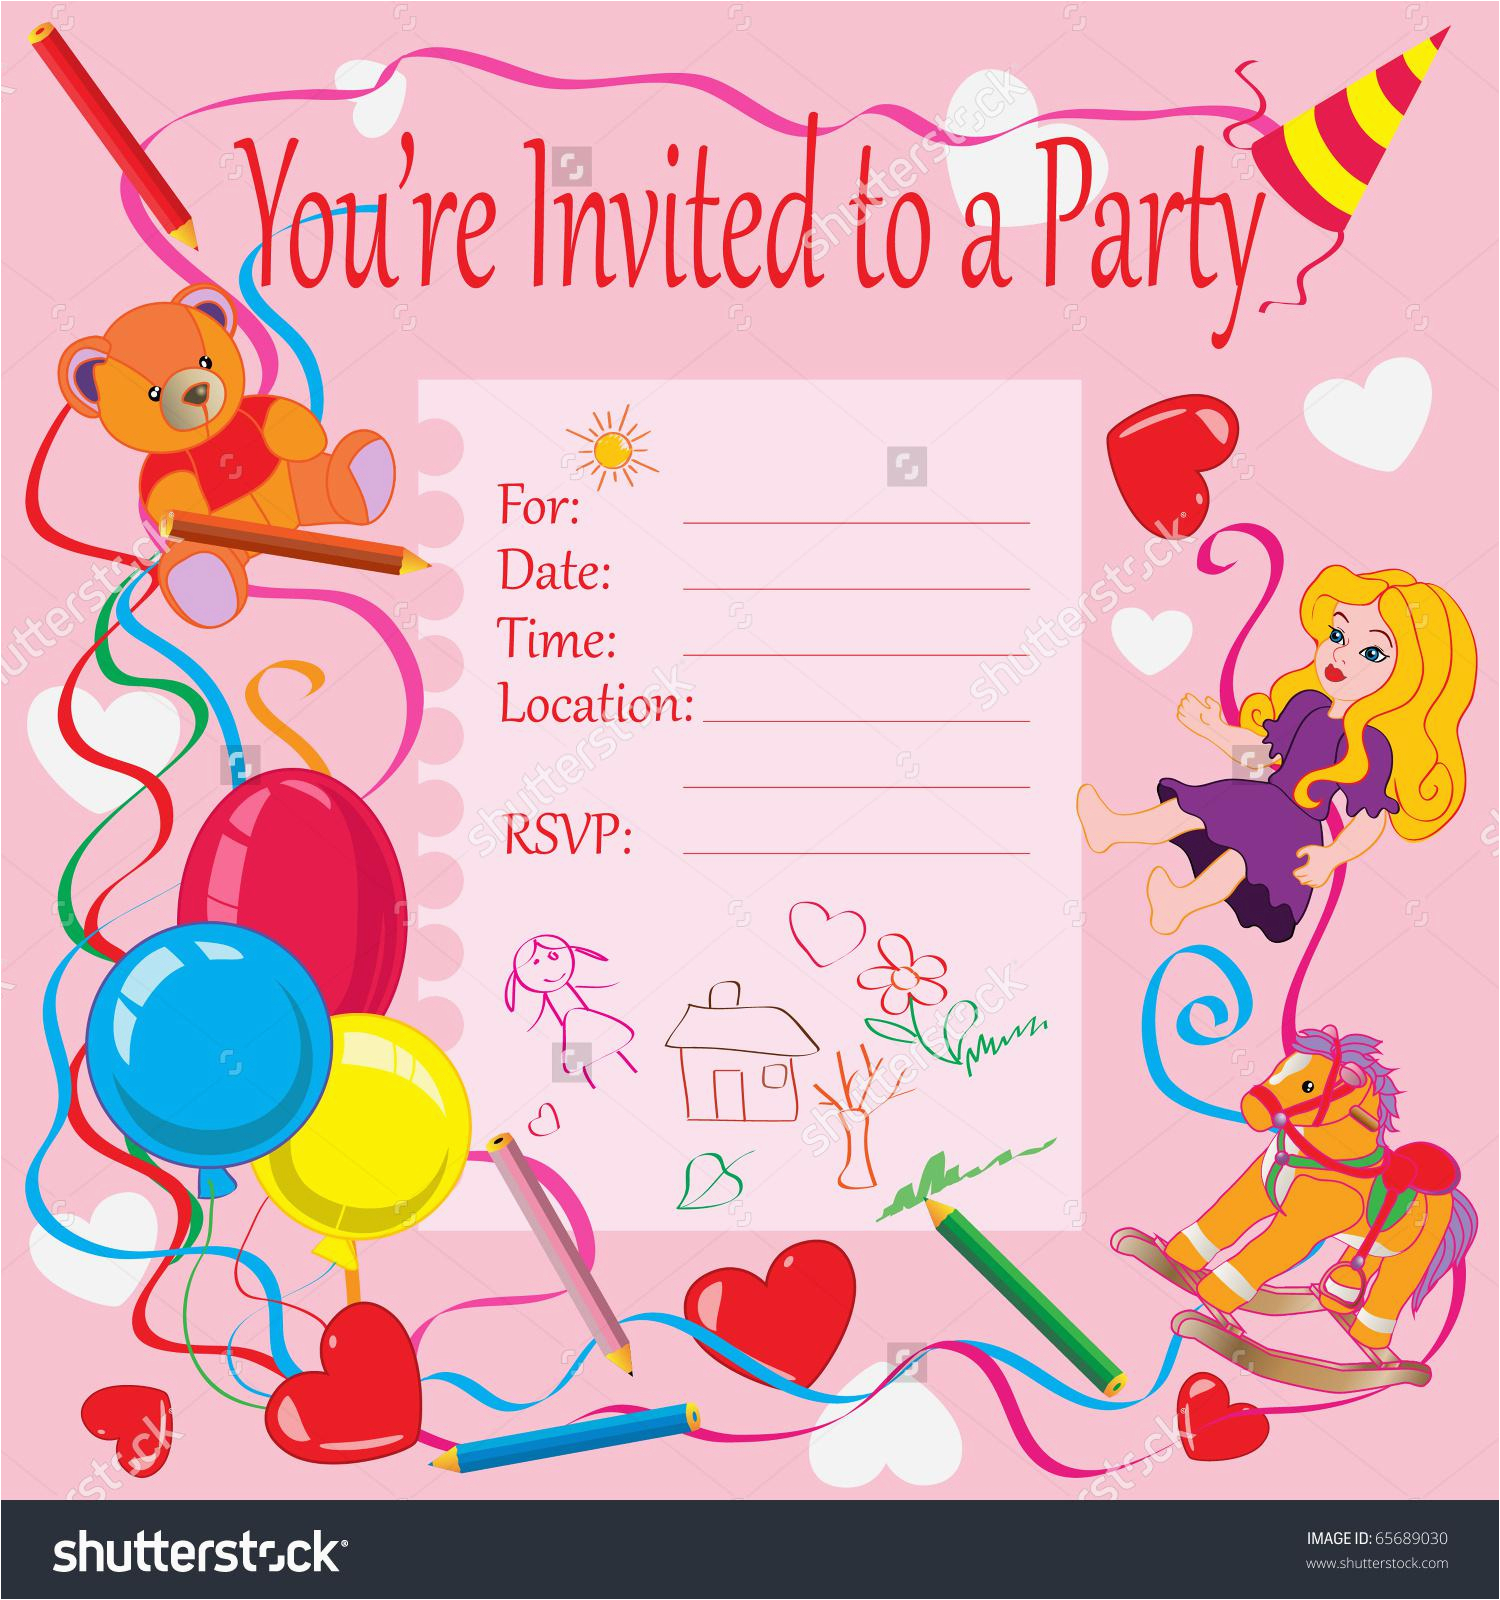 how-to-make-online-birthday-invitation-card-birthdaybuzz